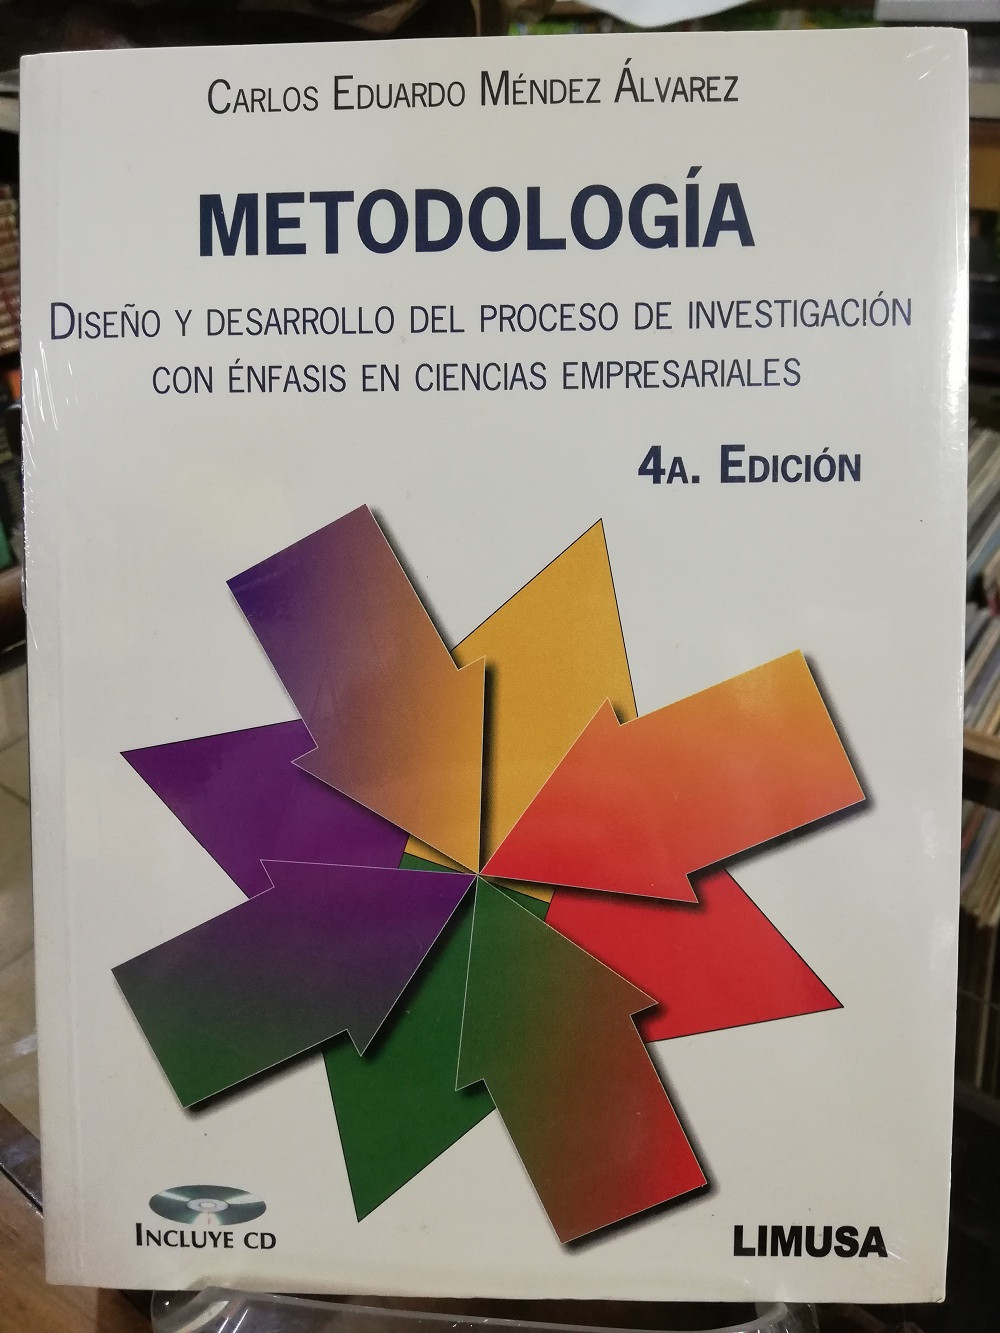 MetodologÍa DiseÑo Y Desarrollo Del Proceso De InvestigaciÓn Carlos Eduardo Mendez Alvarez 9012